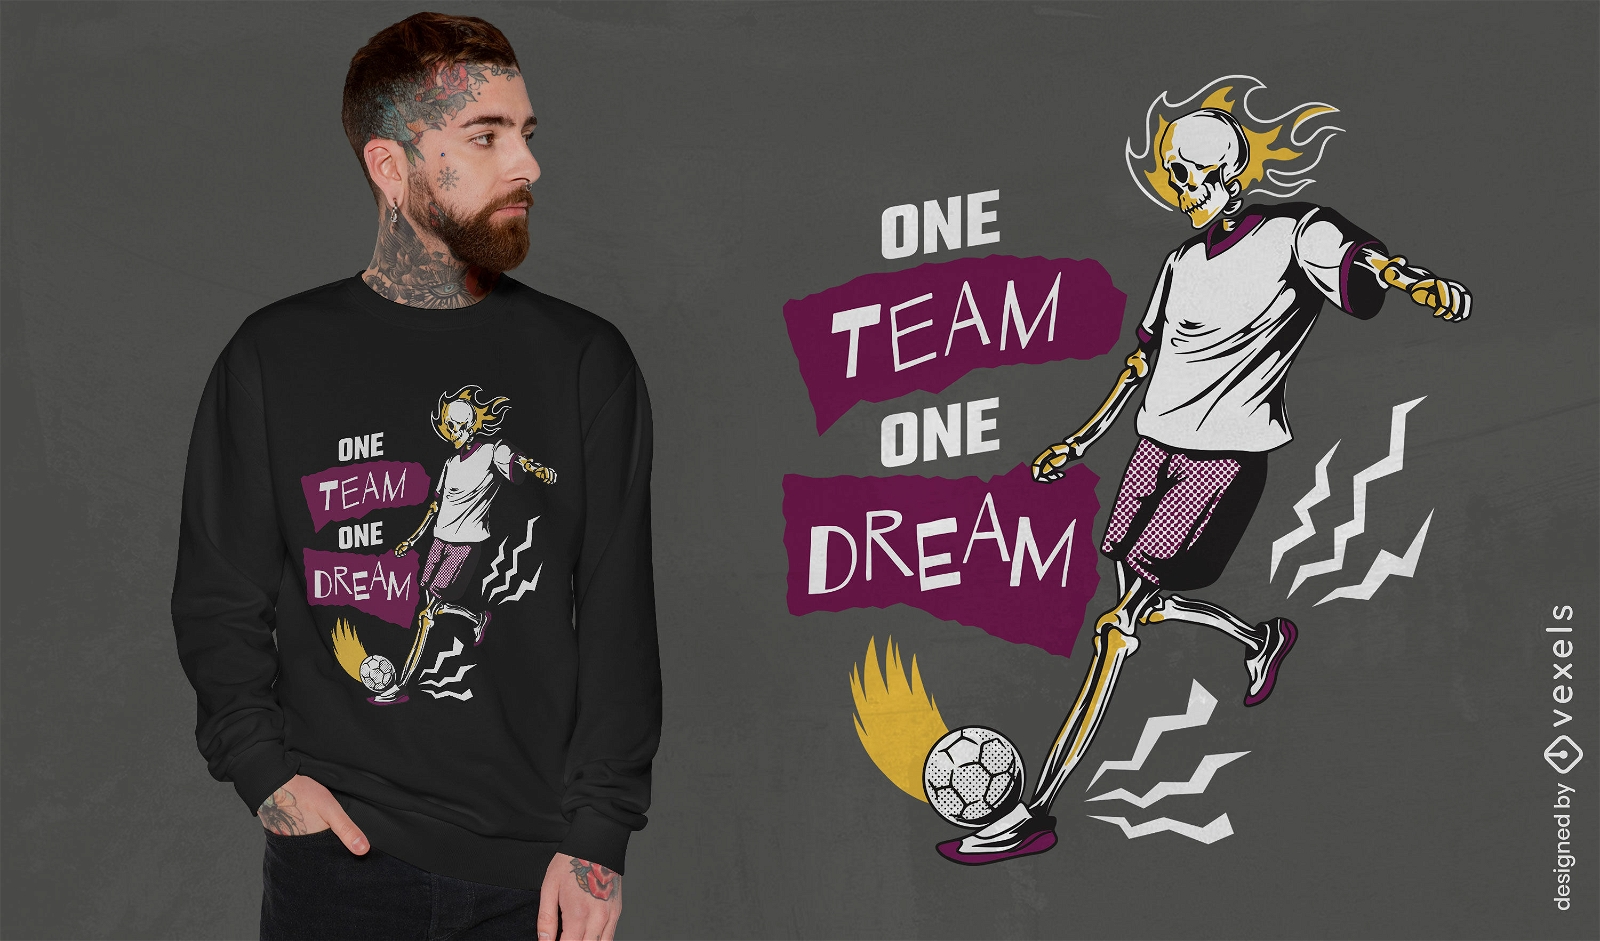 Dream team soccer skeleton t-shirt design